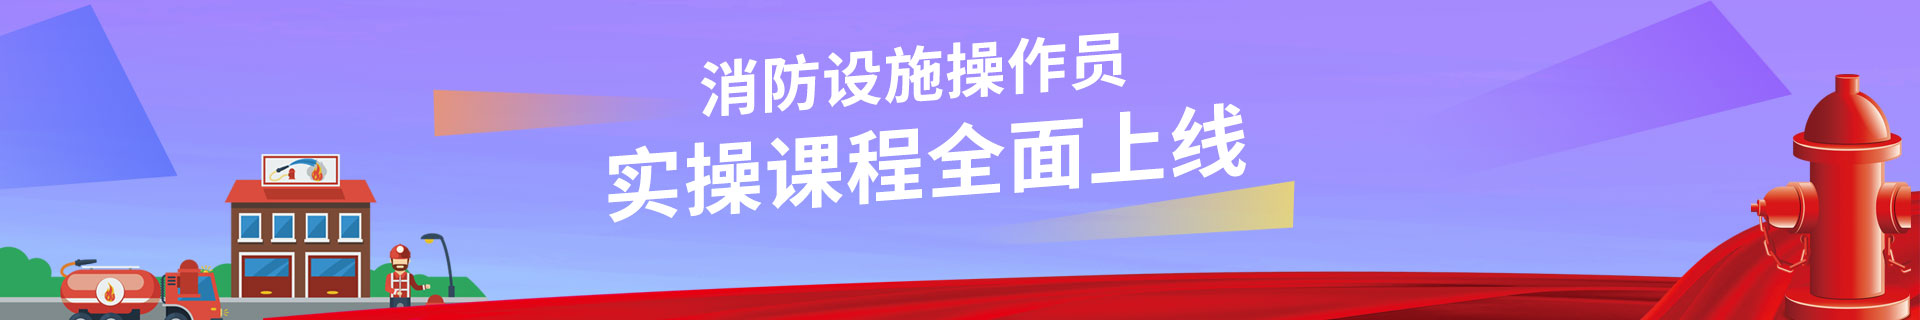 河南郑州优路教育培训学校